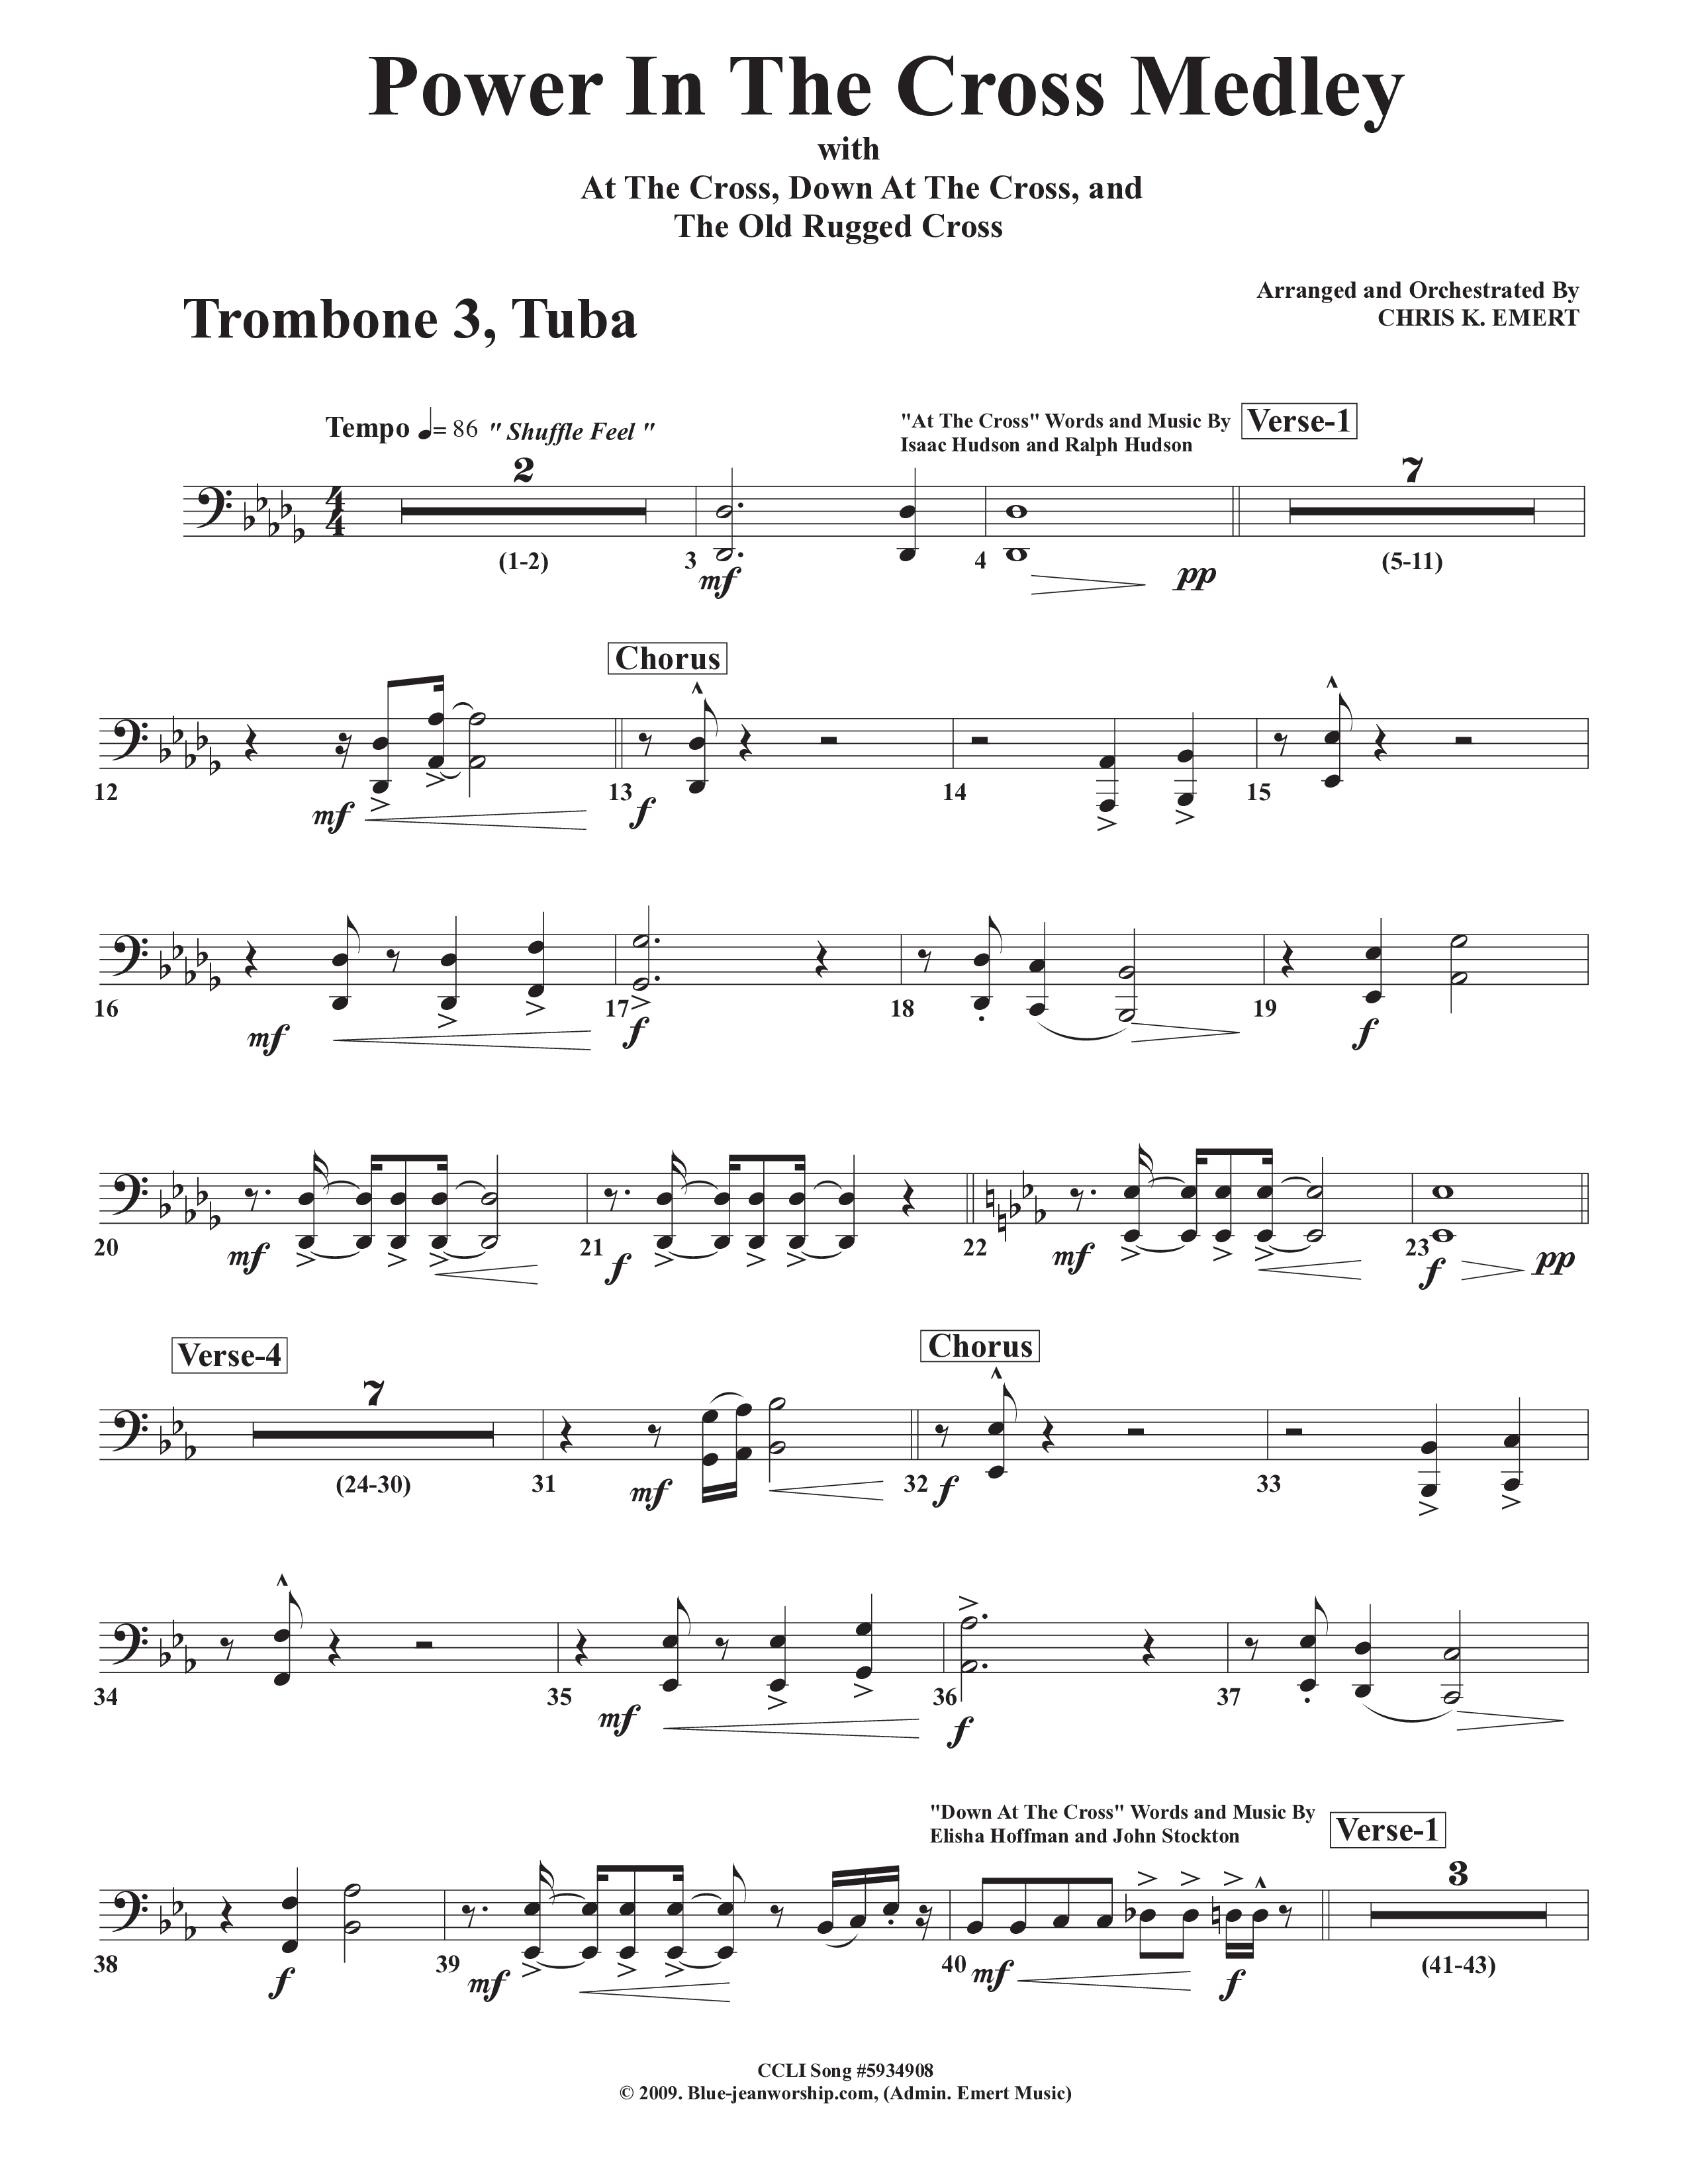 Power In The Cross Medley Trombone 3/Tuba (Chris Emert)